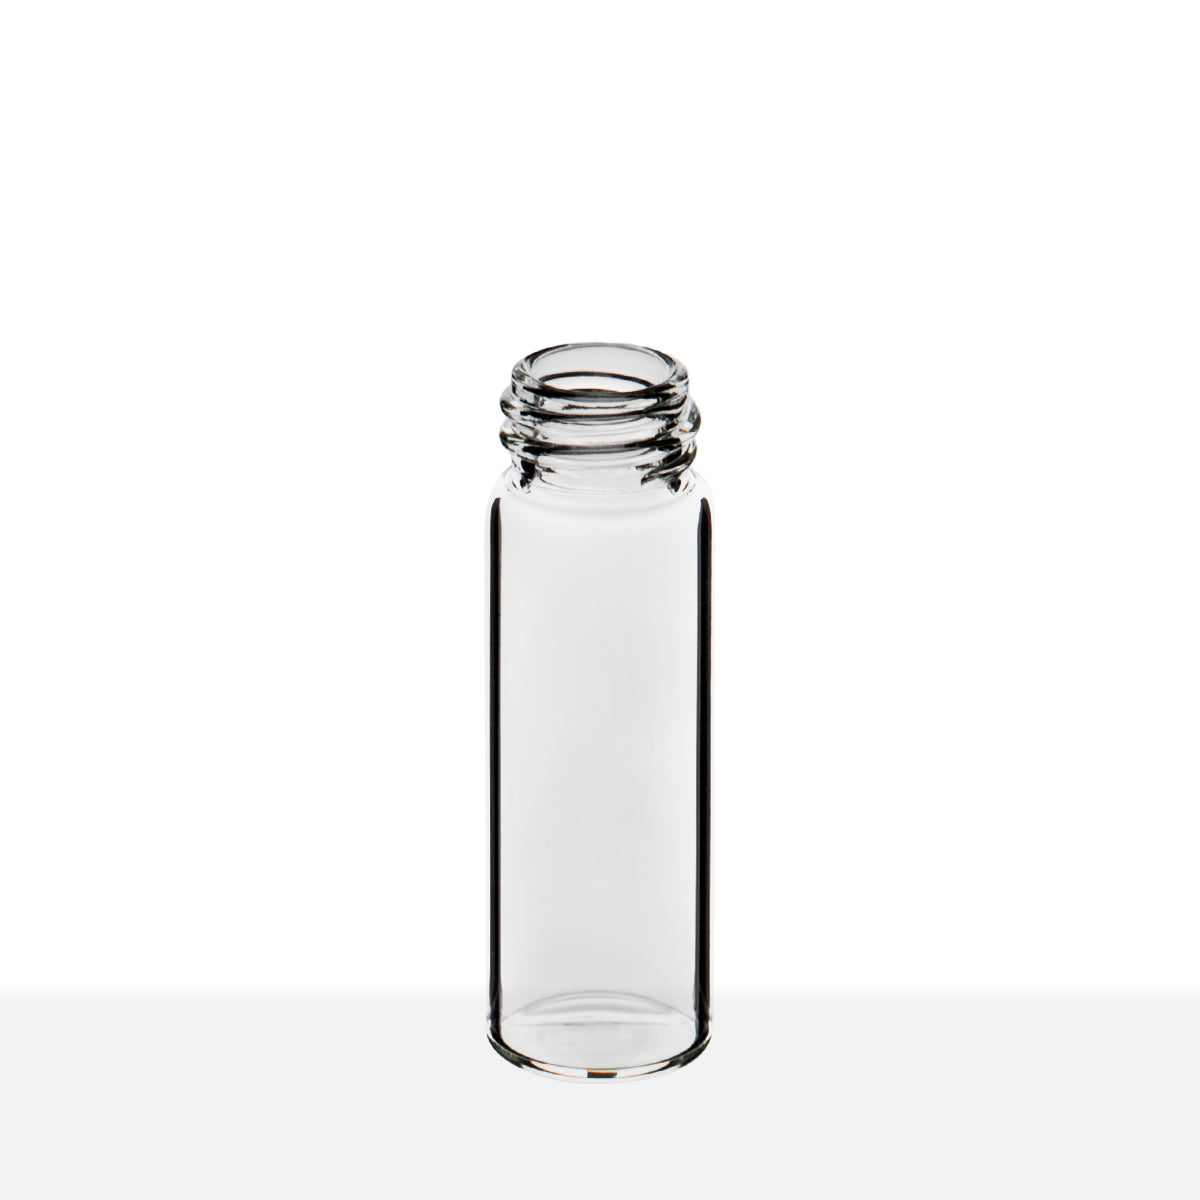 SCREW THREAD GLASS VIALS - CLEAR Item #:VC131545